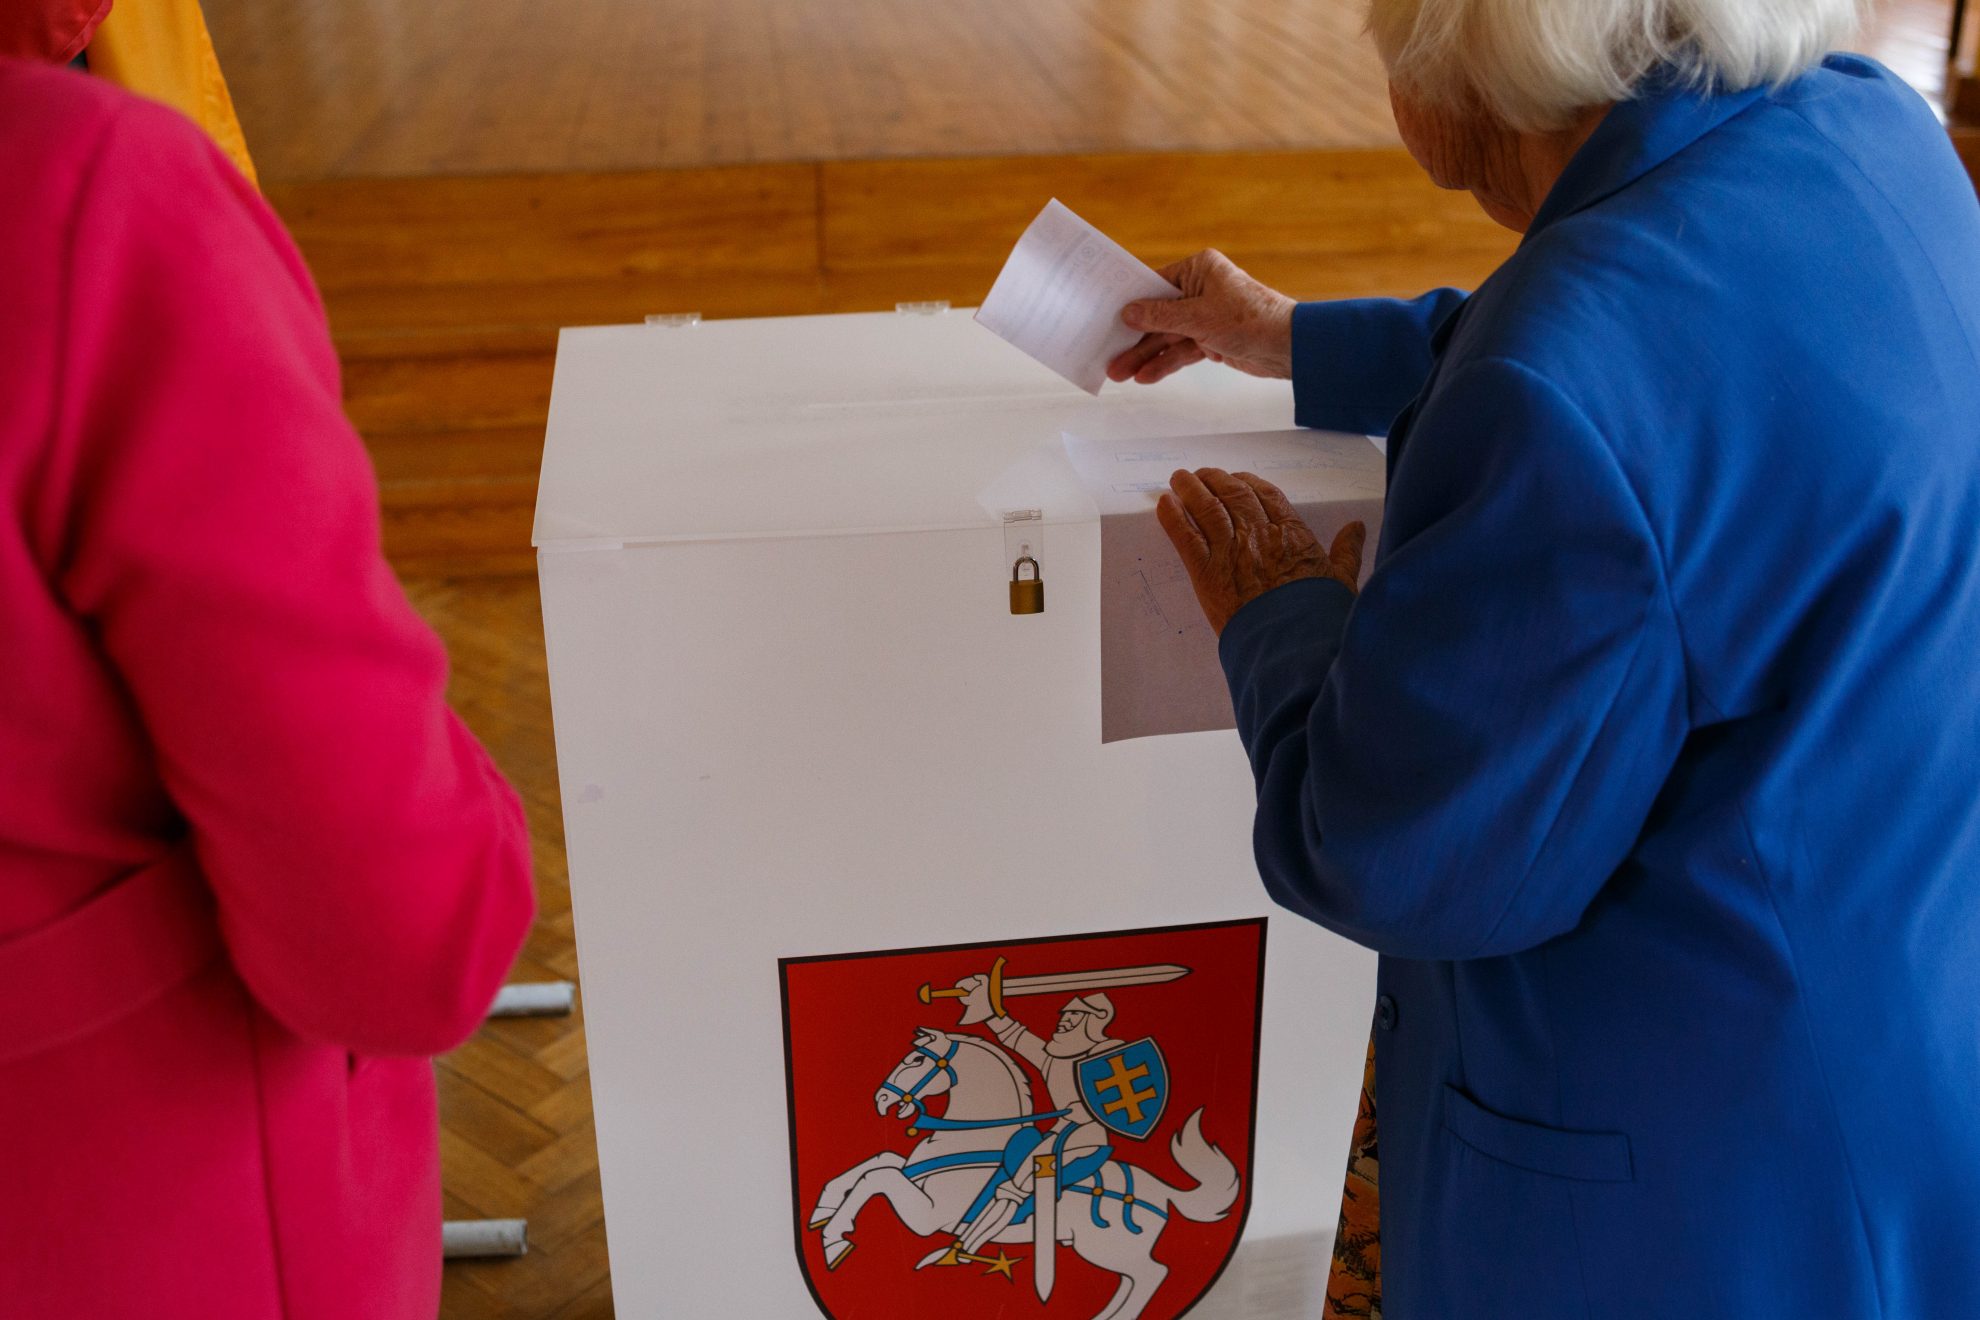 Vyriausioji rinkimų komisija (VRK) antradienį bendru sutarimu priėmė sprendimą 2020 metų Seimo rinkimams sudaryti Pasaulio lietuvių vienmandatę rinkimų apygardą.